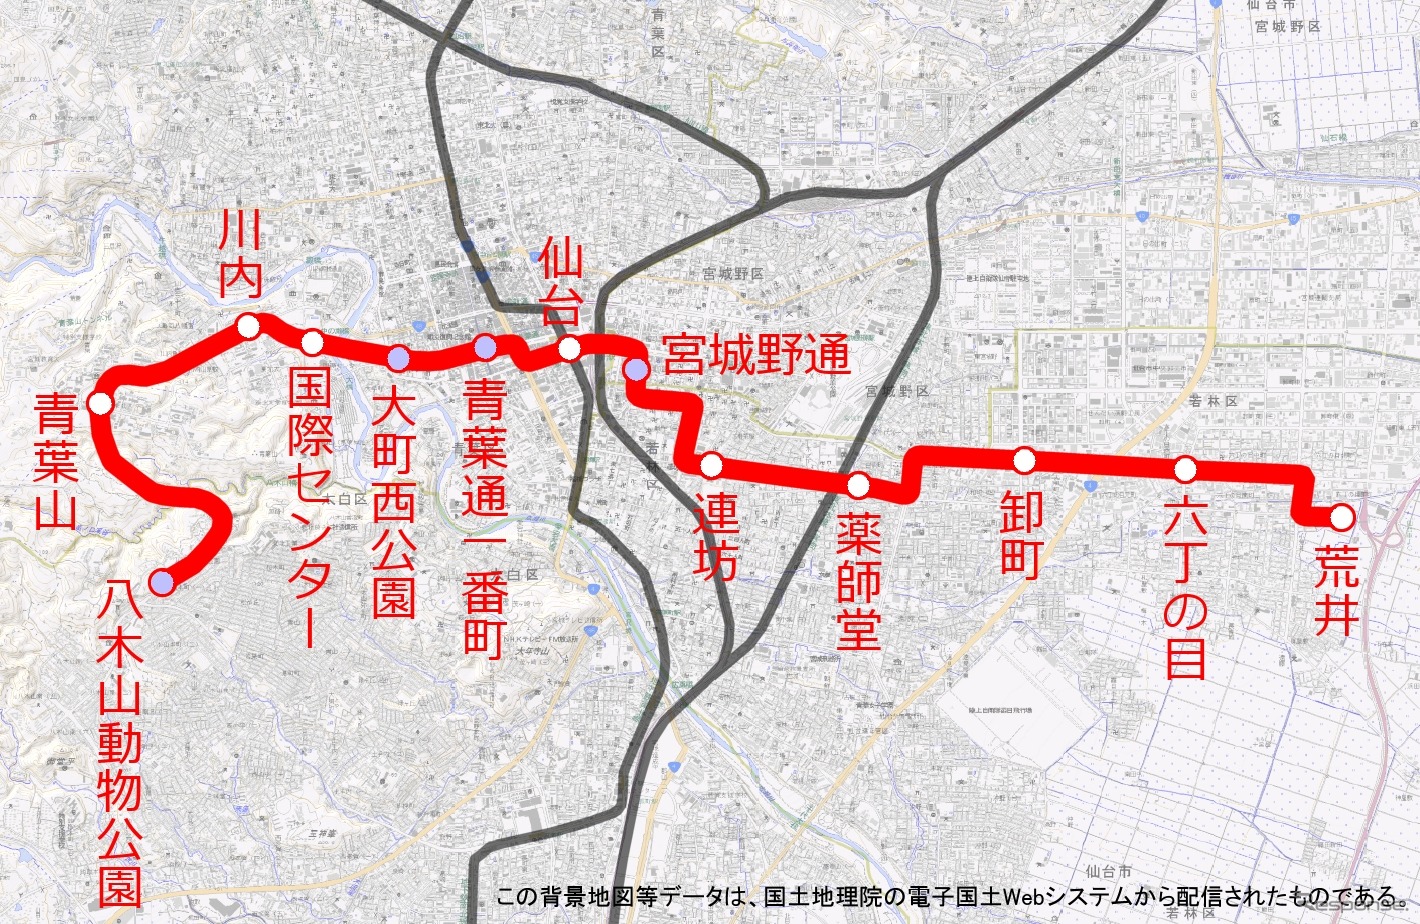 東西線の路線図。仙台市中心部を東西に横断する。